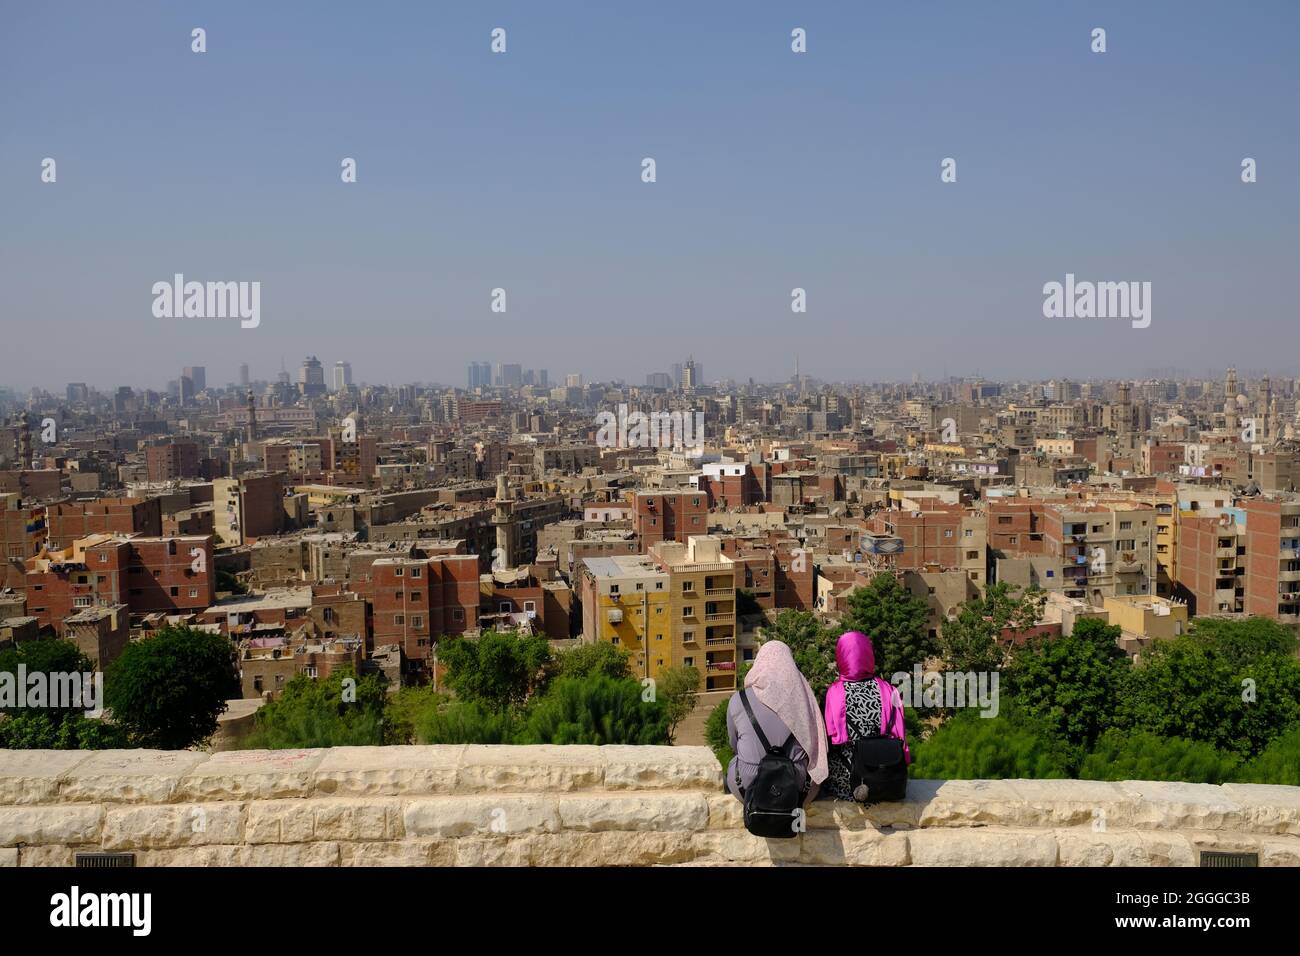 Egypt Cairo - City view from Al Azhar Park Stock Photo